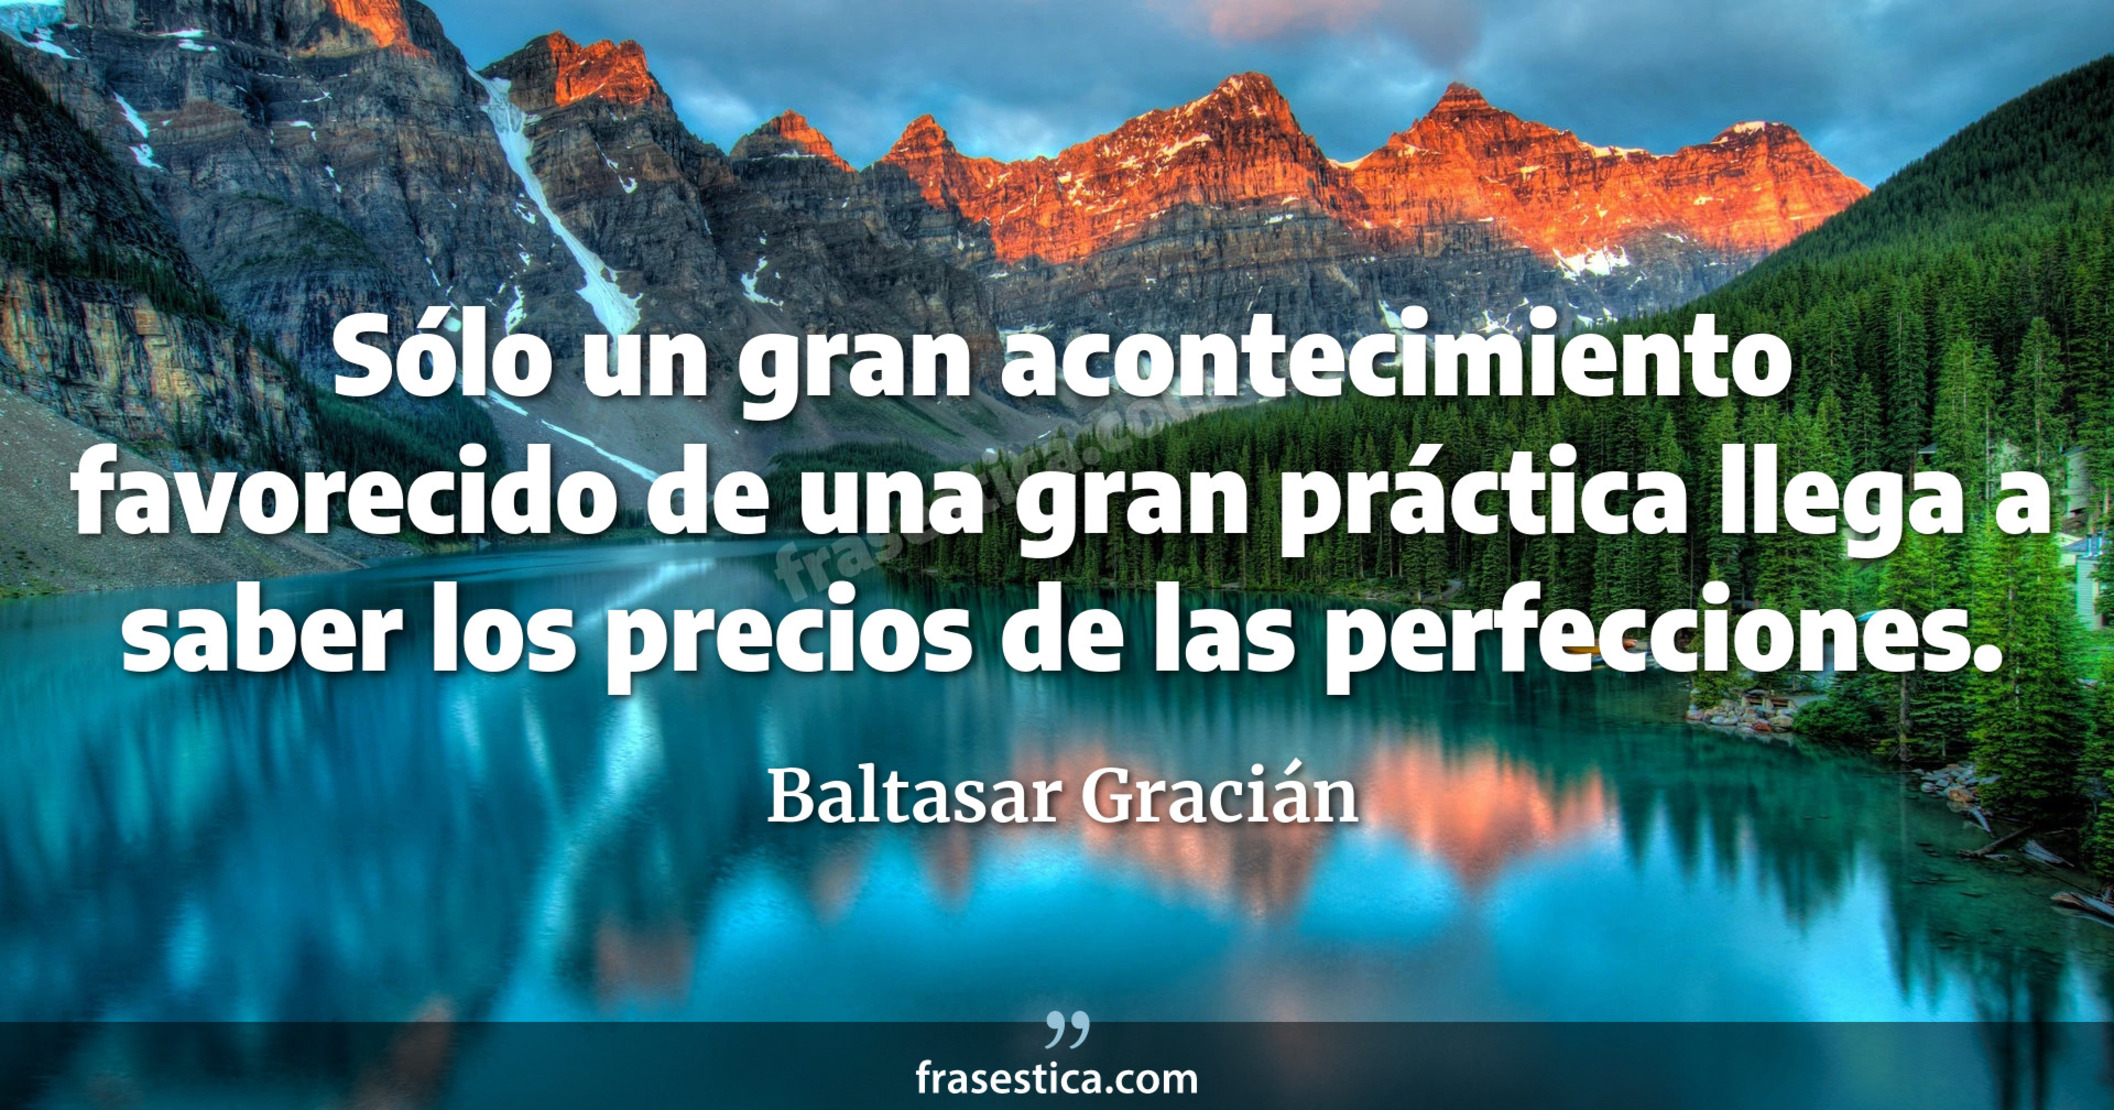 Sólo un gran acontecimiento favorecido de una gran práctica llega a saber los precios de las perfecciones. - Baltasar Gracián